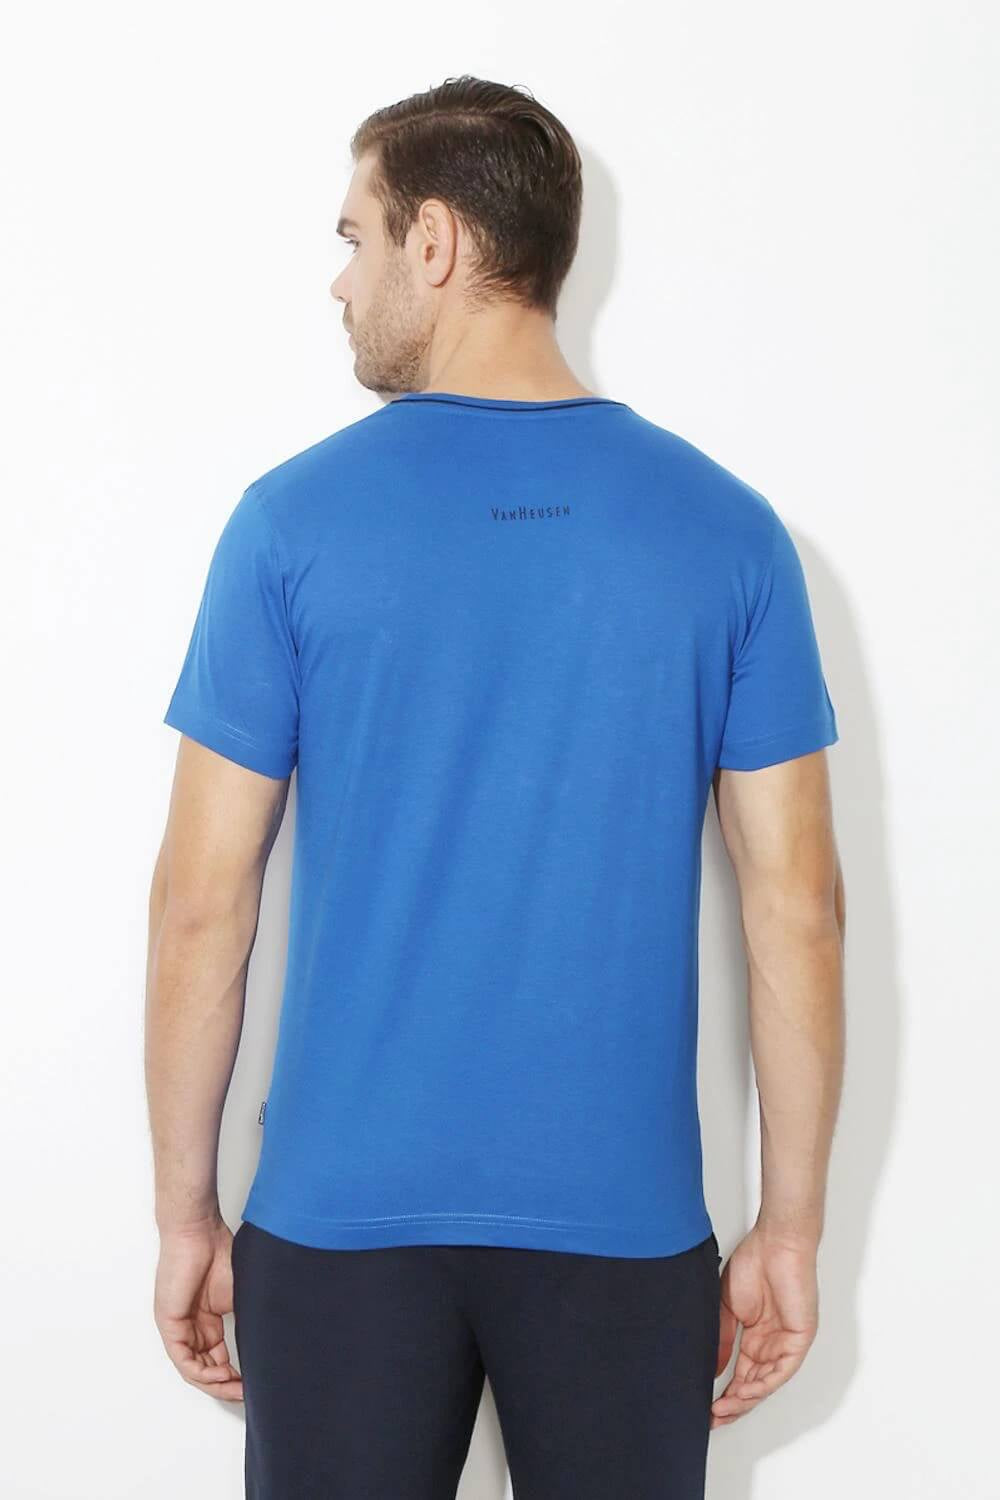 Van Heusen Lapis Blue Tshirt for Men #60021